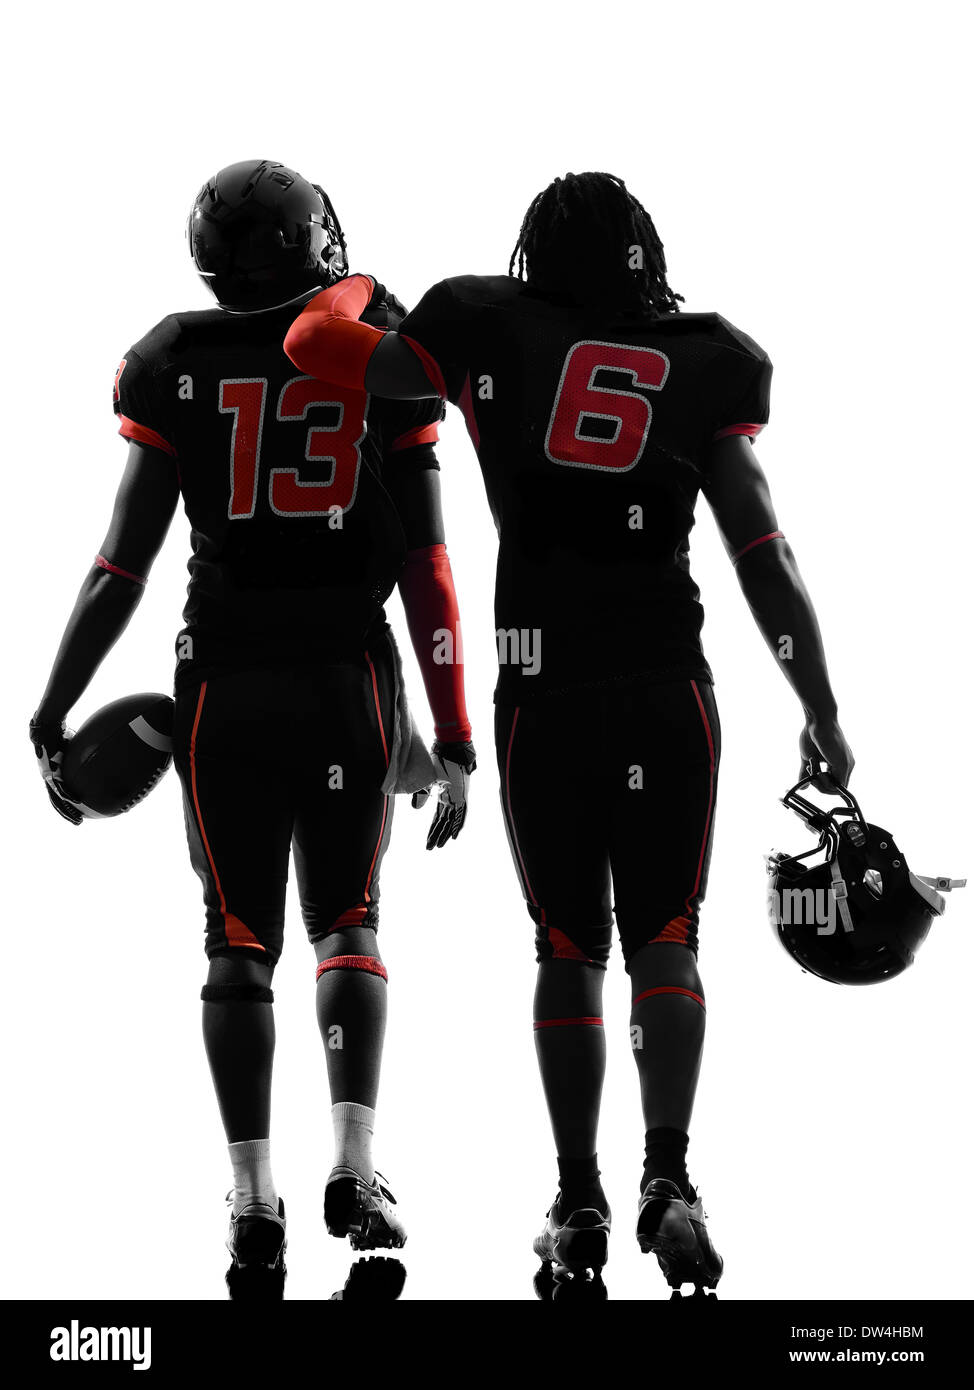 zwei american-Football-Spieler zu Fuß Rückansicht Silhouette Schatten auf weißem Hintergrund Stockfoto